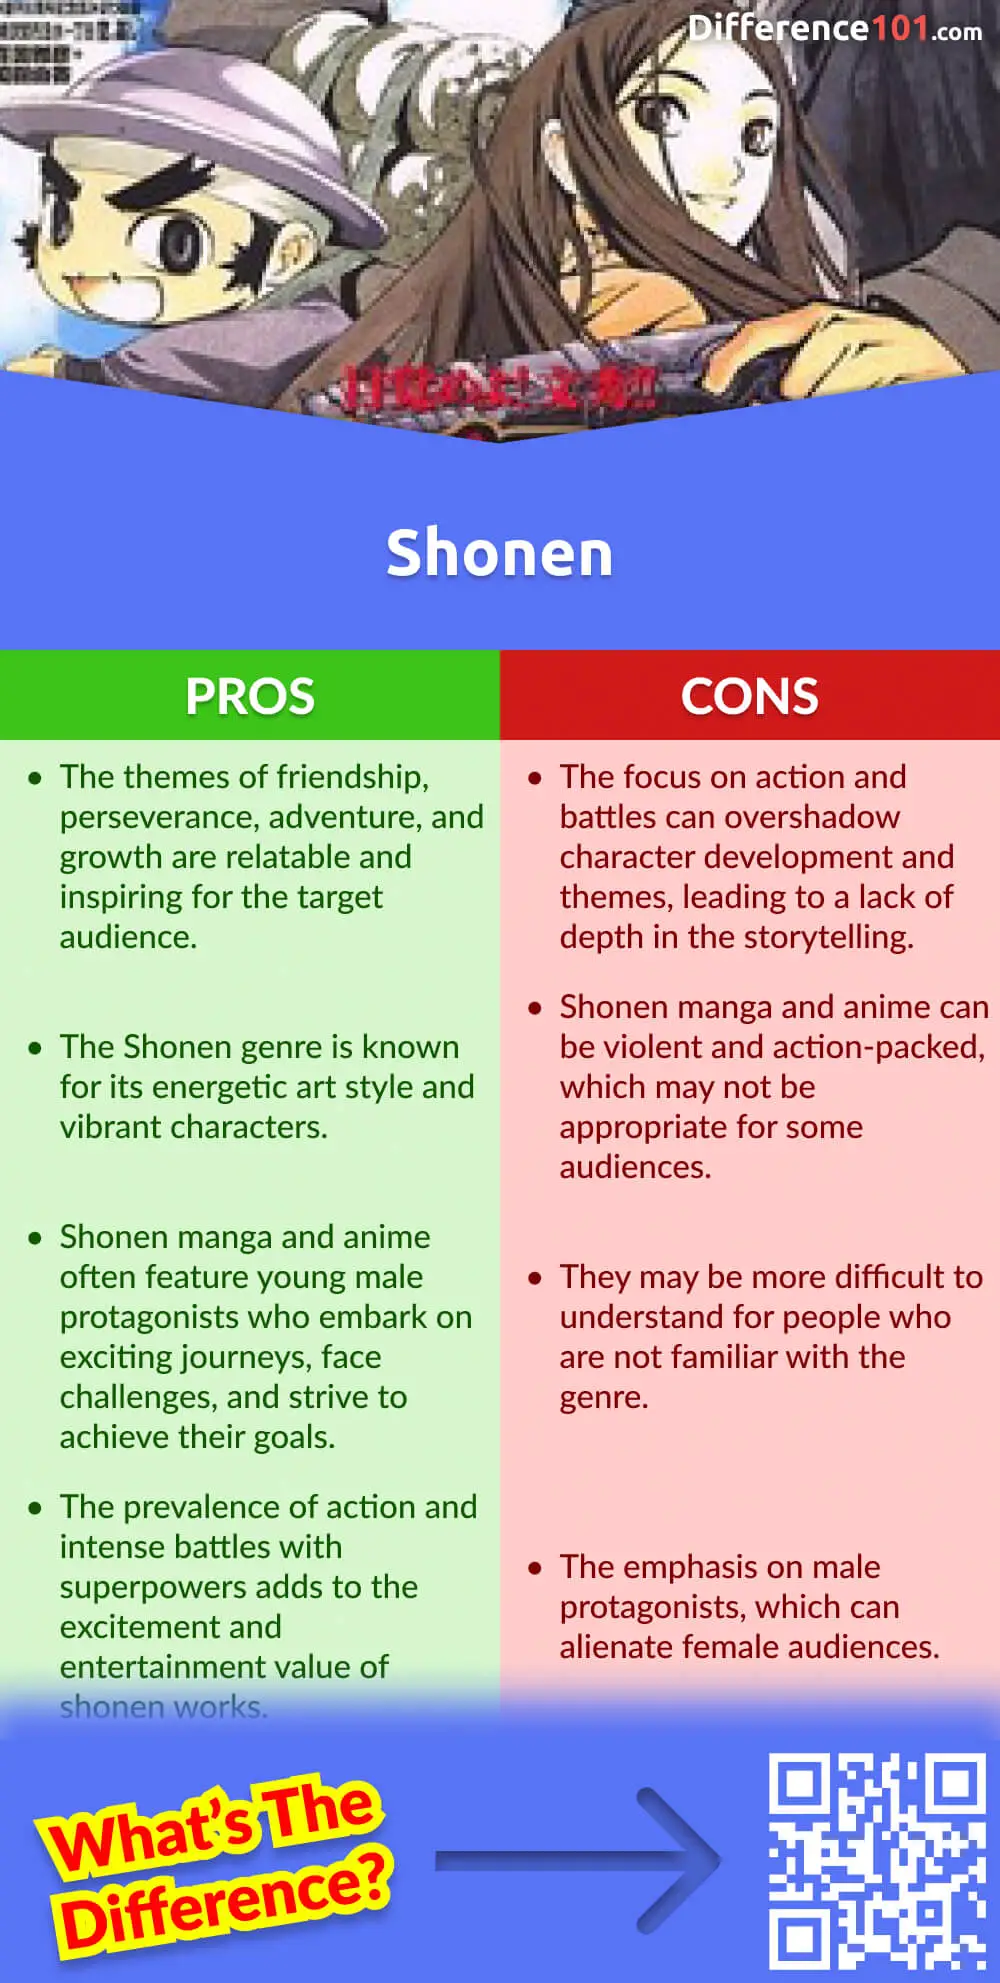 Shonen Pros & Cons